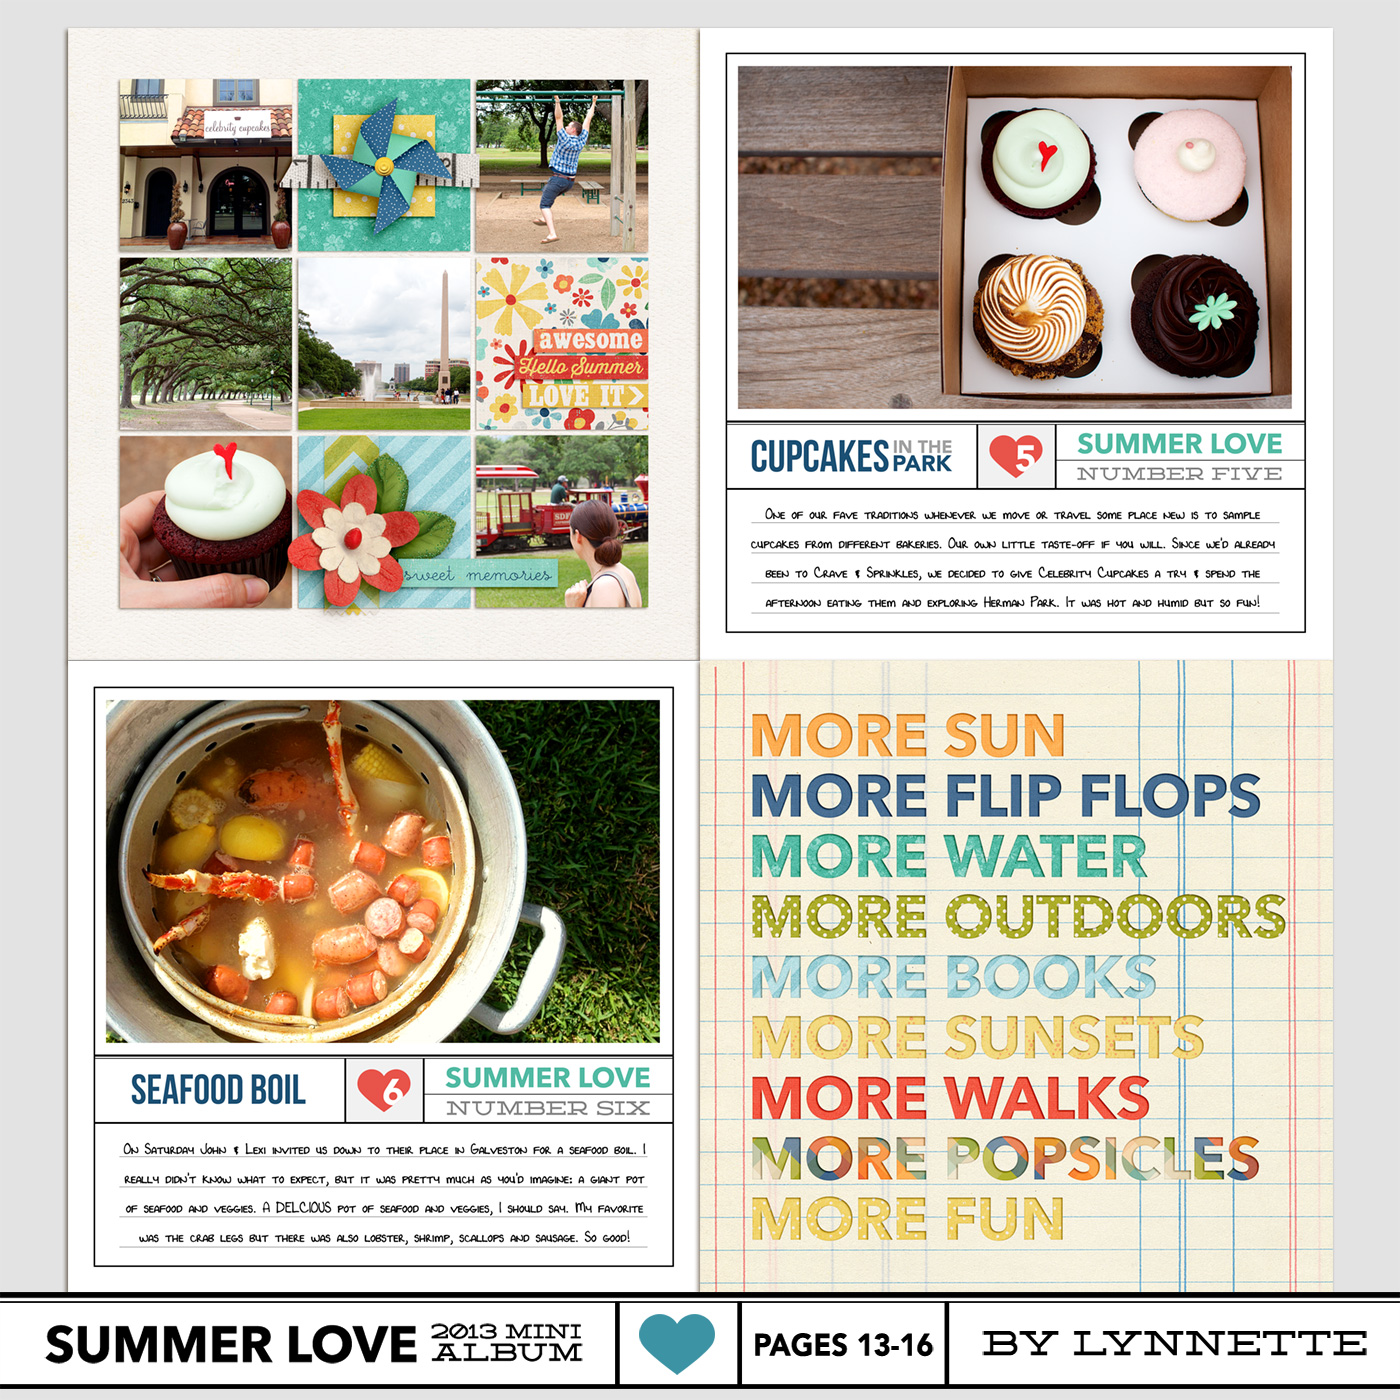 nettiodesigns_SummerLove-pg13-16-Lynnette